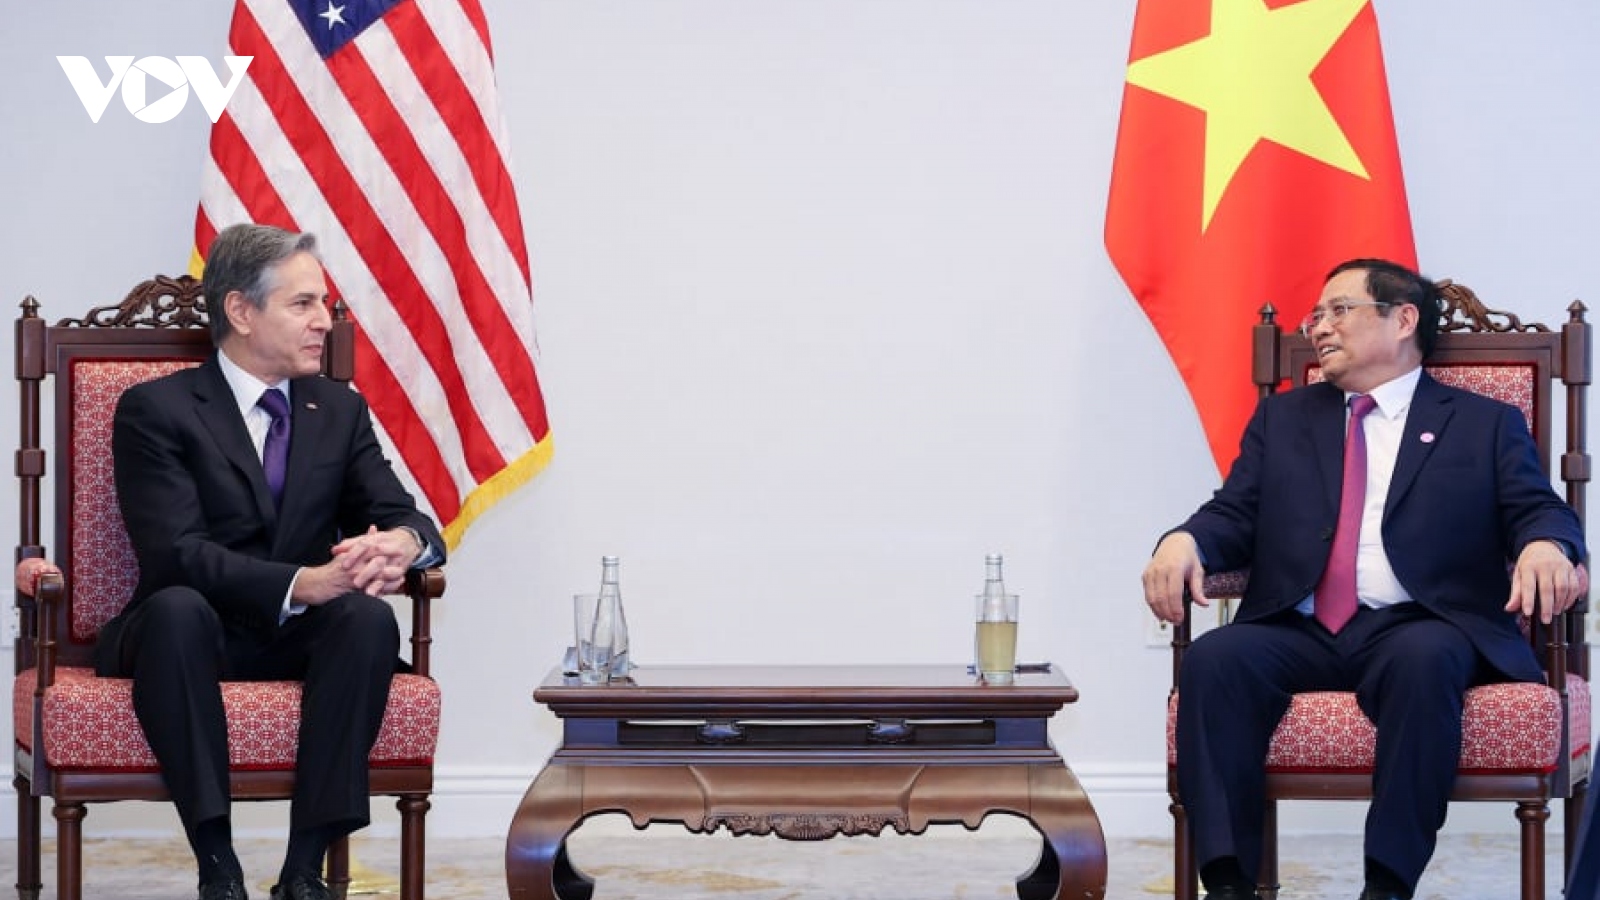 Ngoại trưởng Antony Blinken: Hoa Kỳ ủng hộ Việt Nam mạnh, độc lập và thịnh vượng